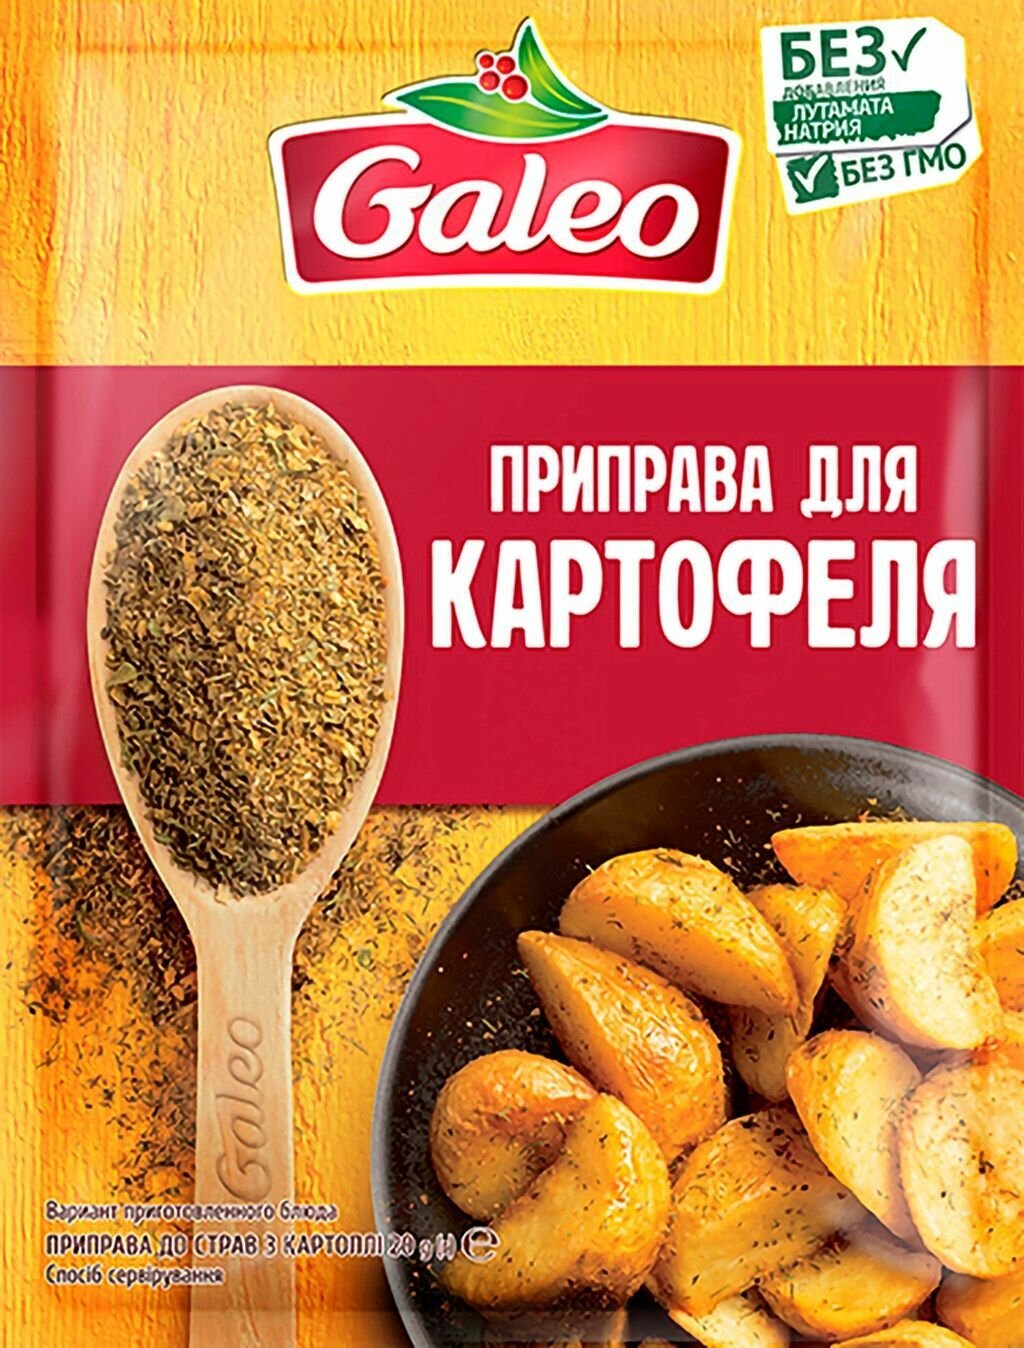 Приправа Для картофеля GALEO, 3 шт. по 20 гр.